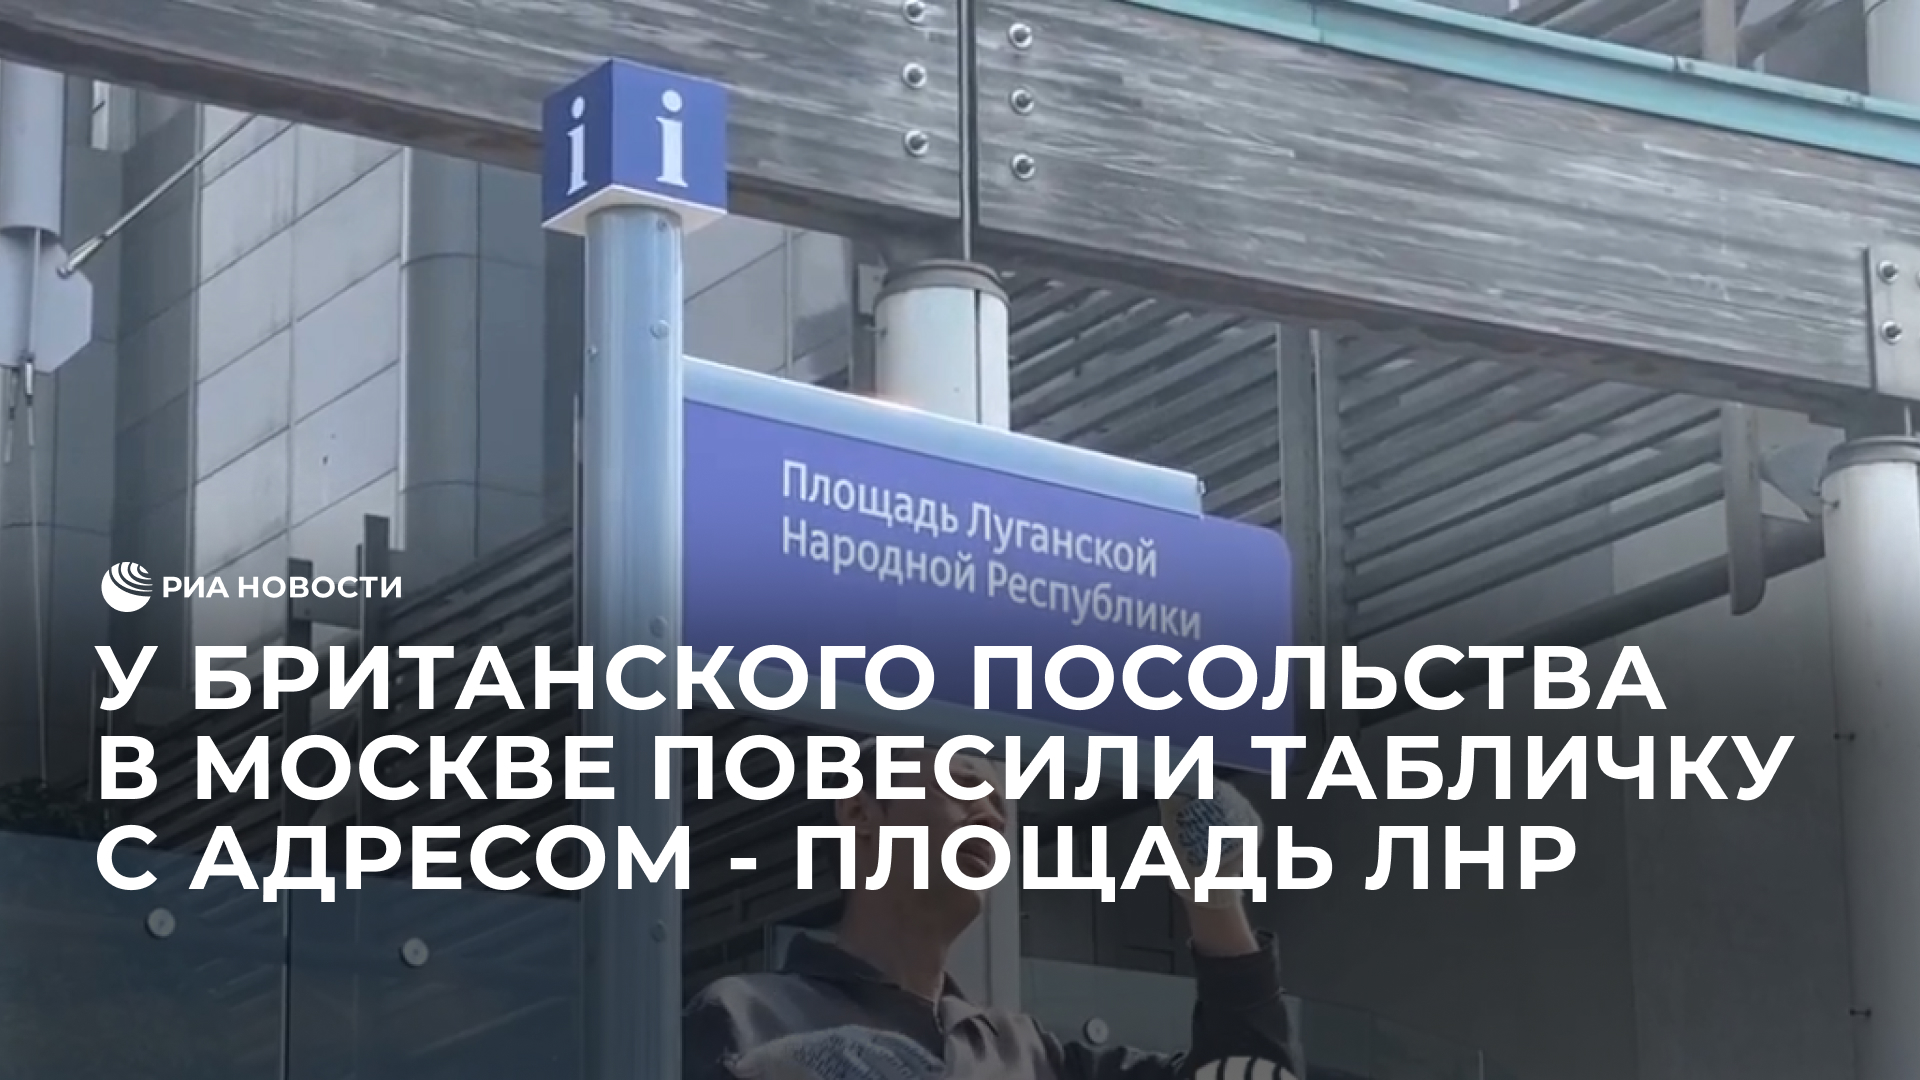 У британского посольства в Москве повесили табличку "Площадь ЛНР"